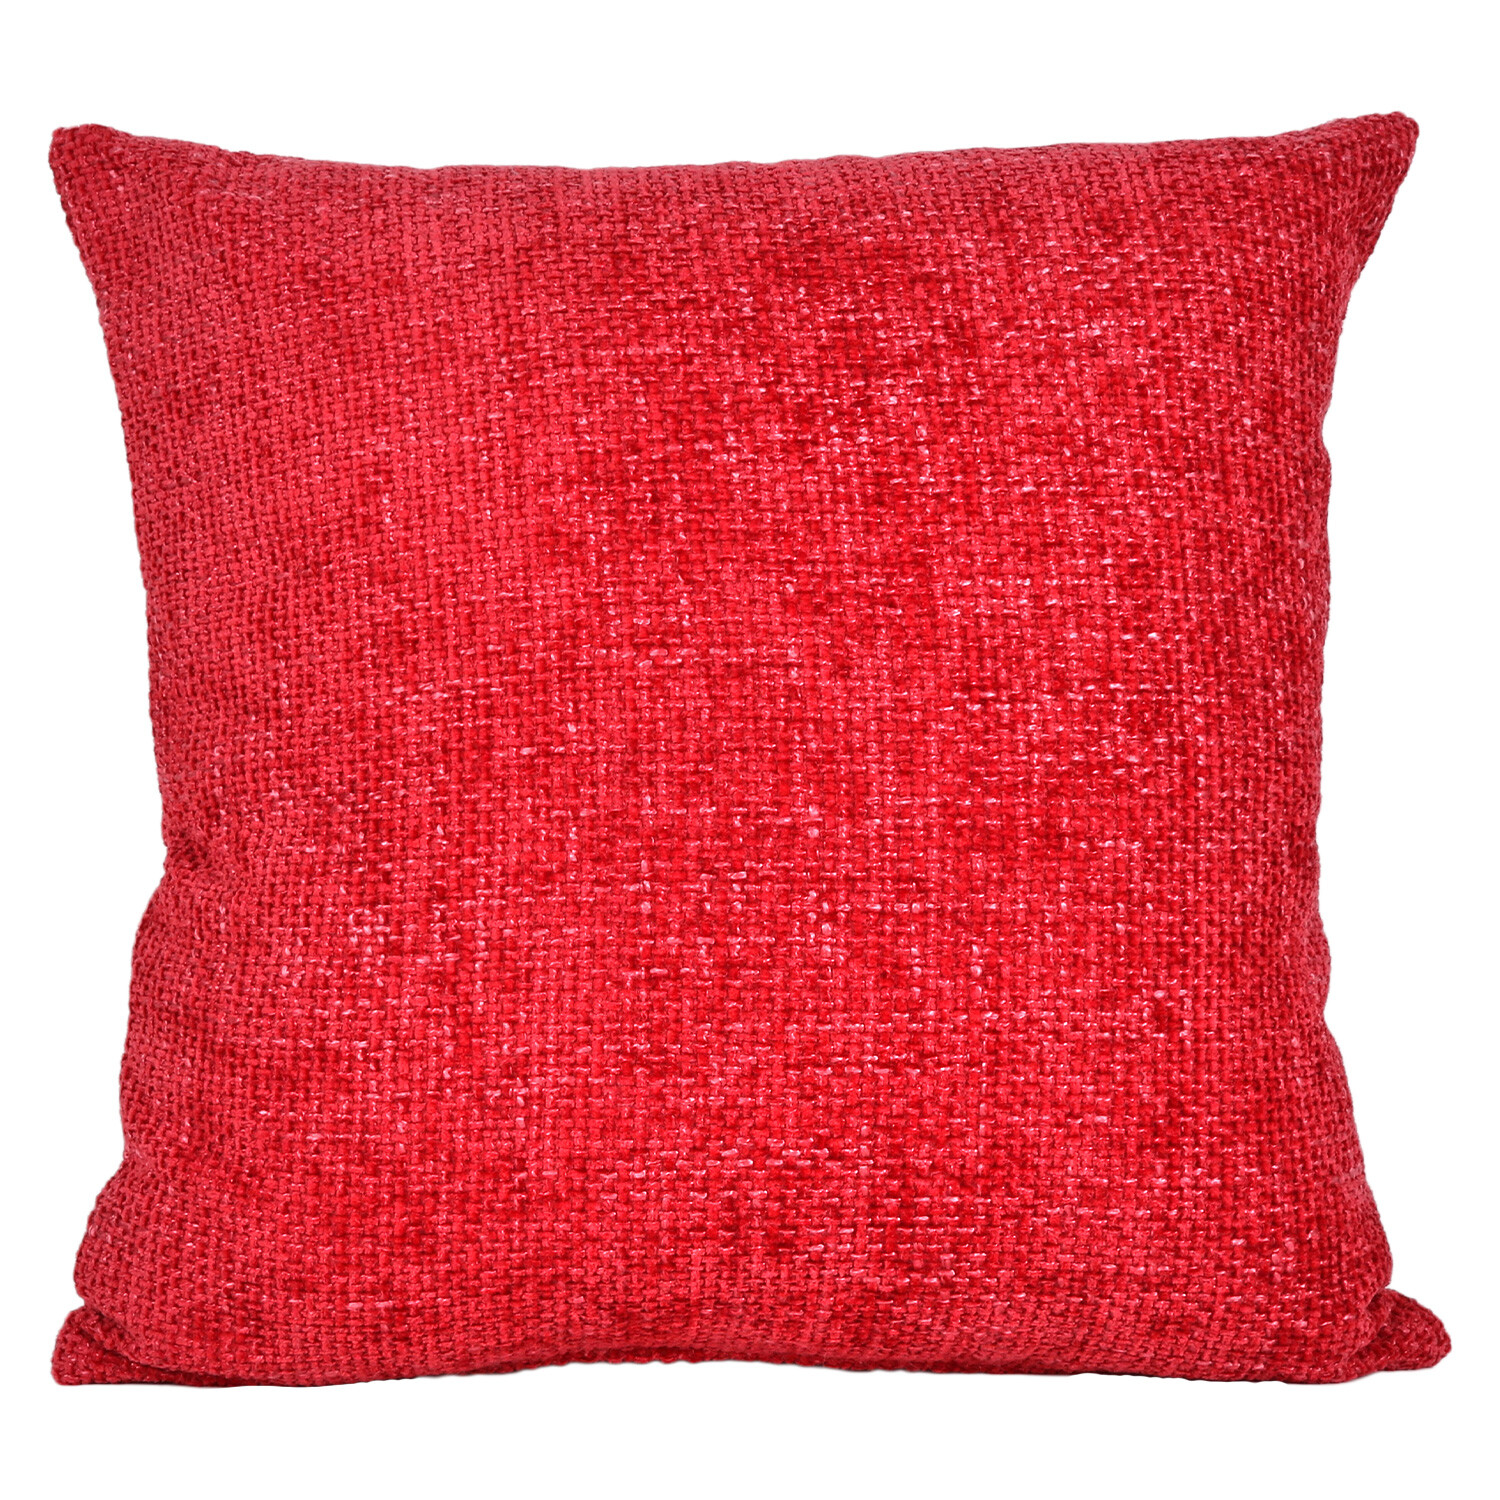 Divante Balham Red Boucle Cushion 50 x 50cm Image